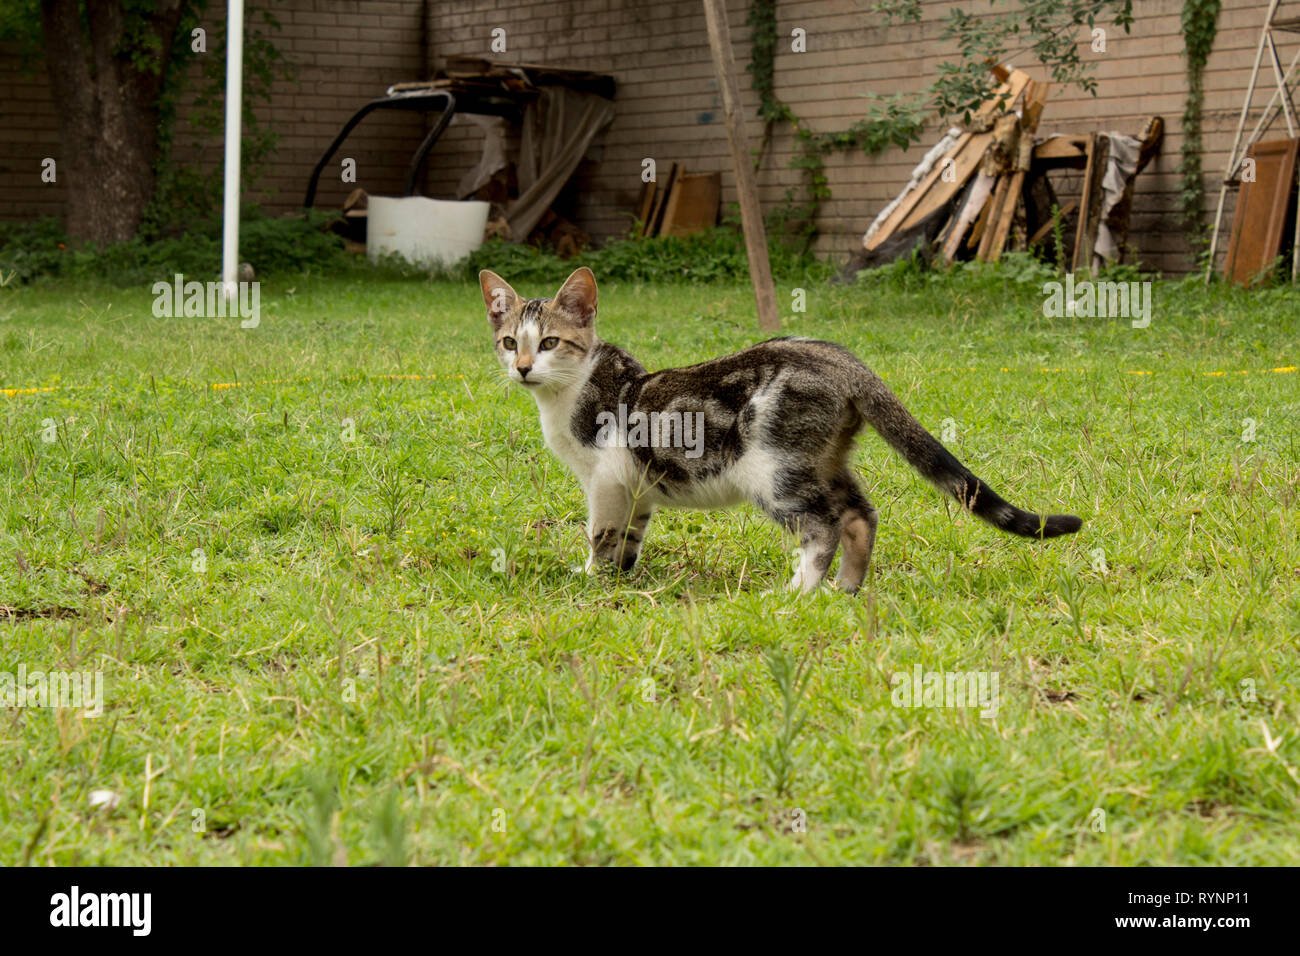 Really cute small kitten in the backyard. Lindo Gatito jugando en el patio trasero. Stock Photo